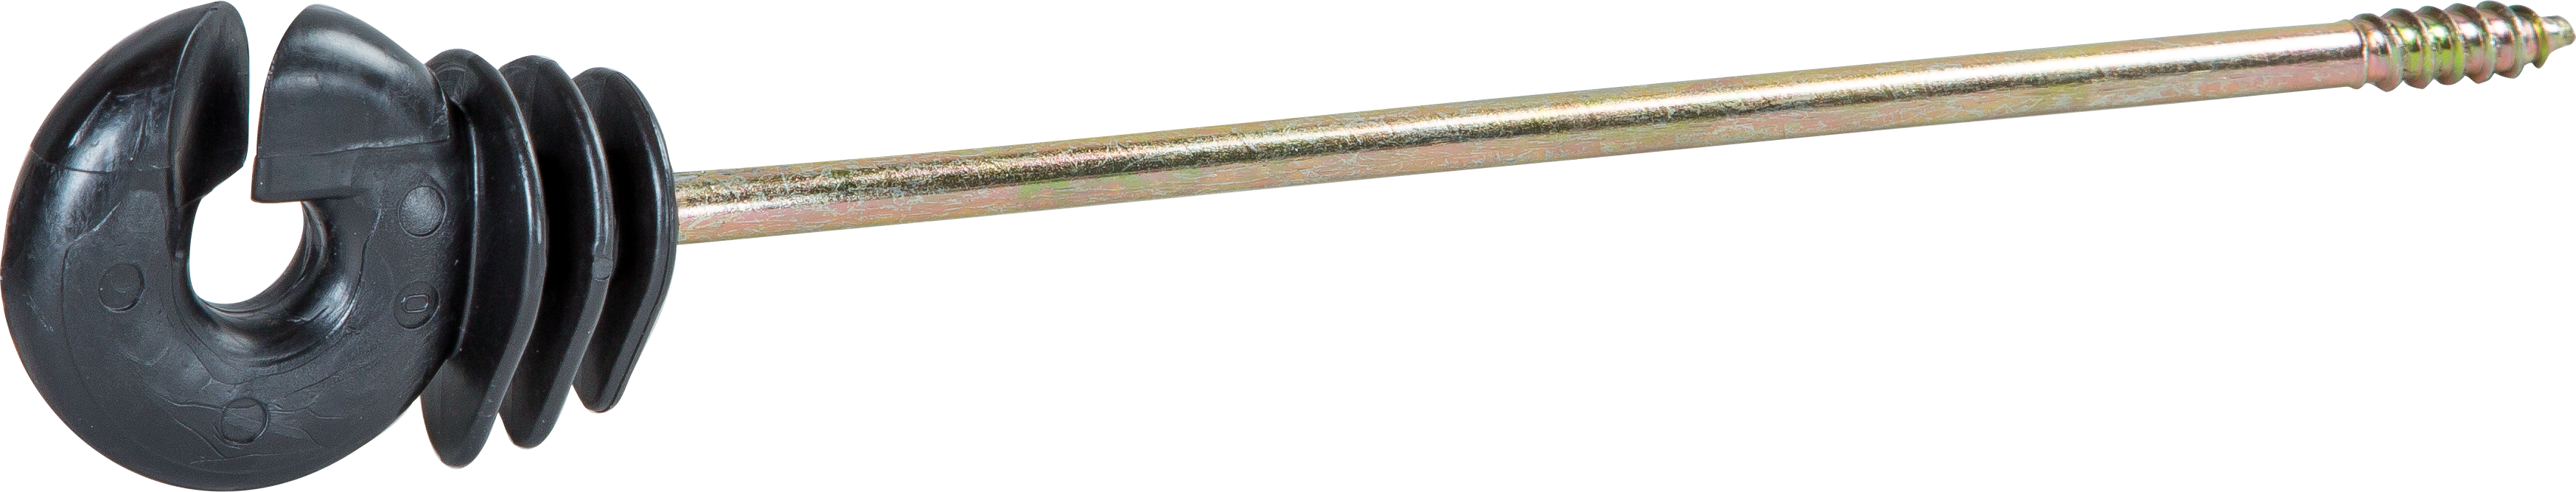 Ringisolator lange schacht 18cm houtdraad (10 stuks / pak)